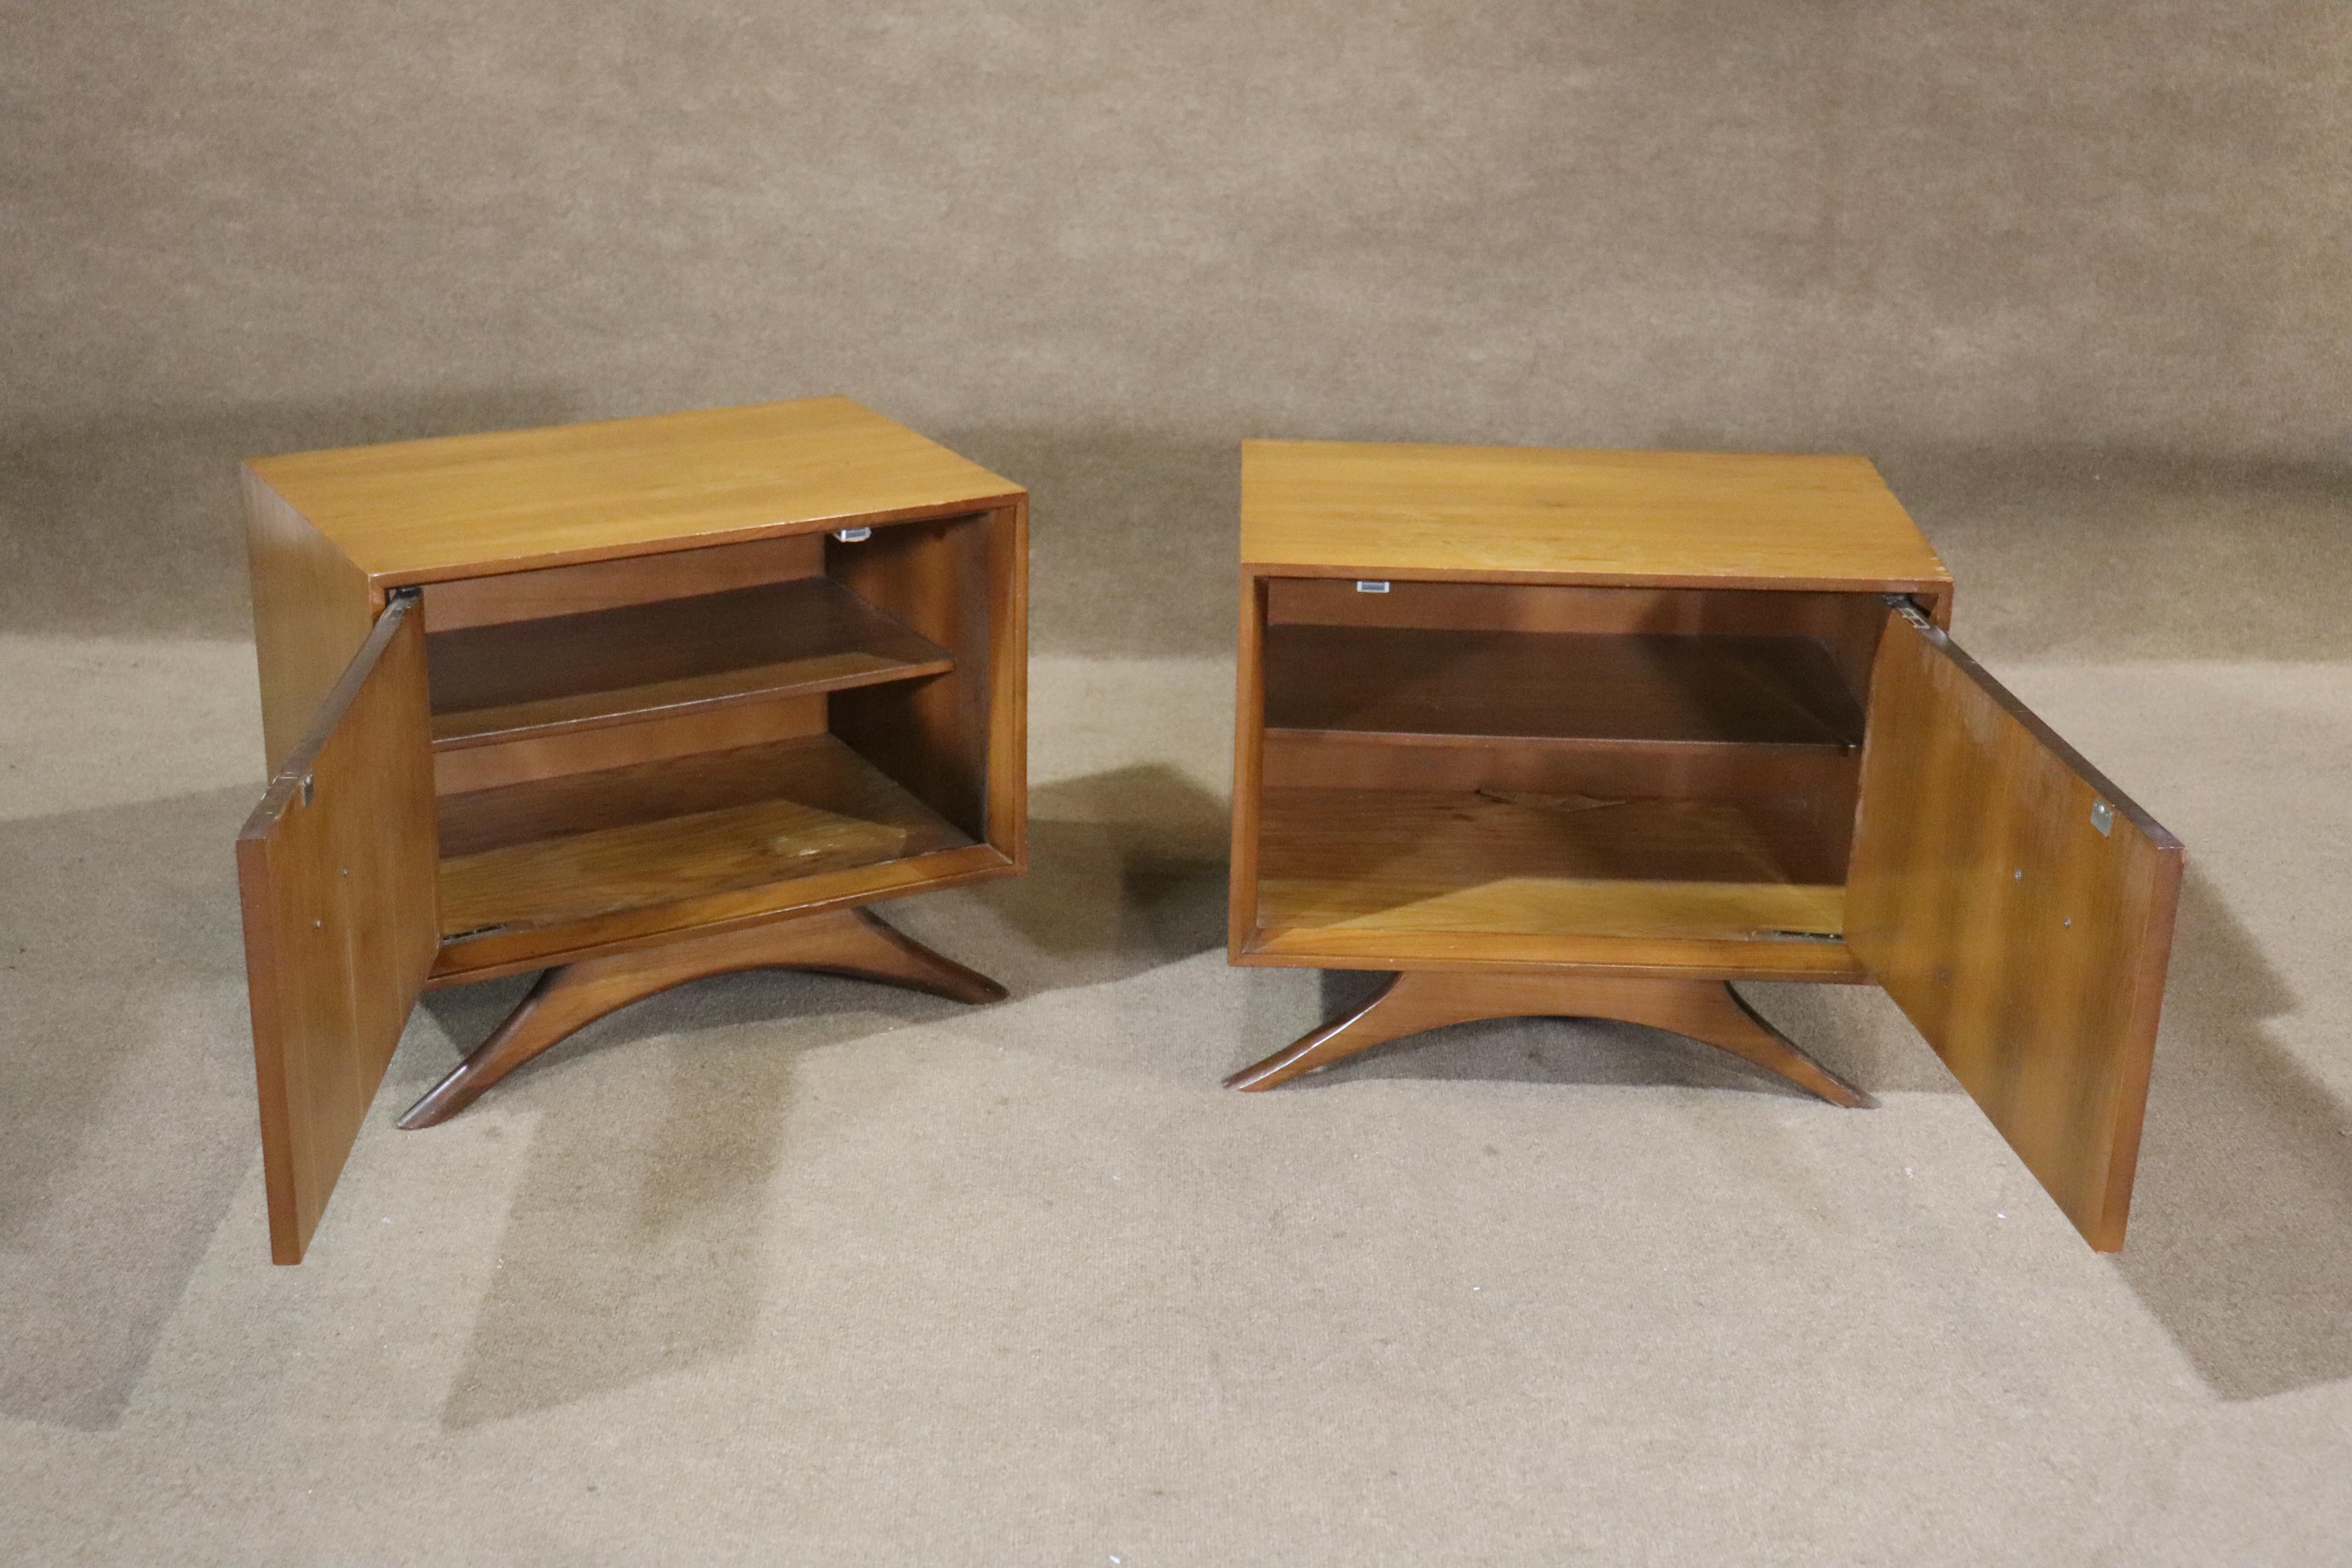 Dieses außergewöhnliche Nachttischpaar ist von Vladimir Kagans skulpturaler Möbelästhetik beeinflusst. Rahmen aus Nussbaumholz auf dramatischen Holzsockeln. Ideal für die Aufbewahrung im Wohn- oder Schlafzimmer.
Bitte bestätigen Sie den Standort NY